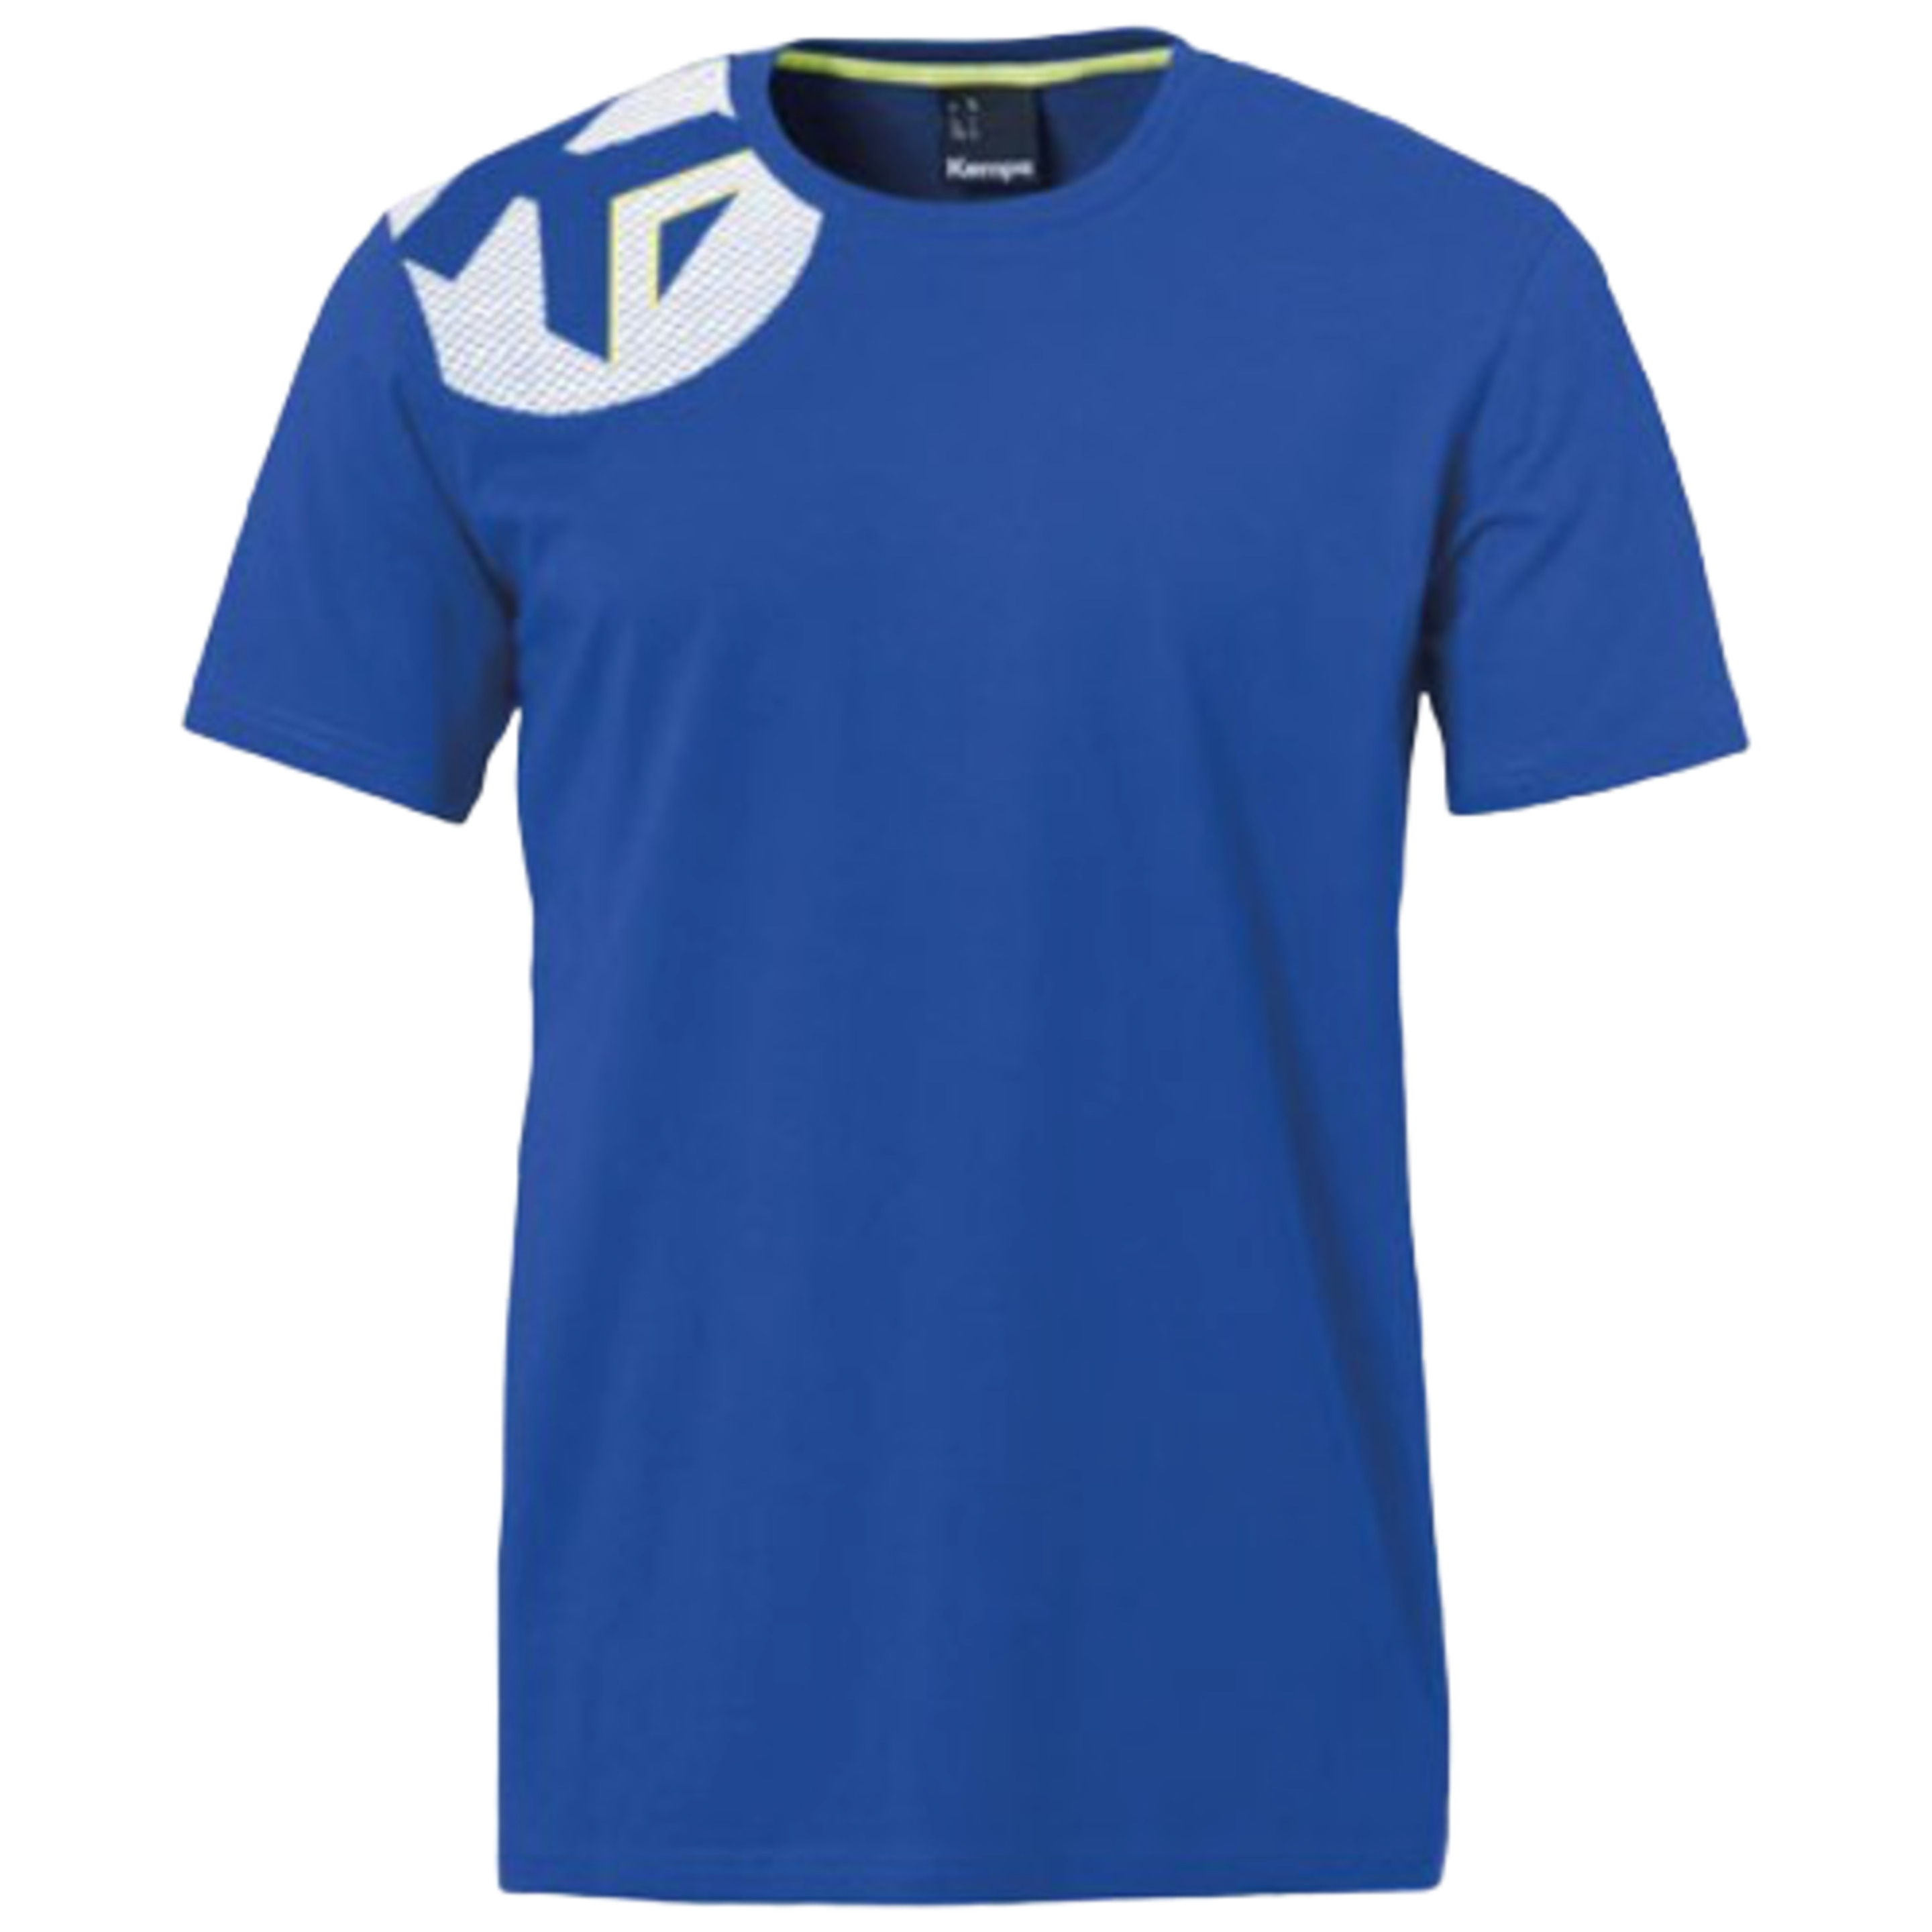 Core 2.0 T-shirt Azul Royal Kempa - azul - Core 2.0 T-shirt Azul Royal Kempa  MKP